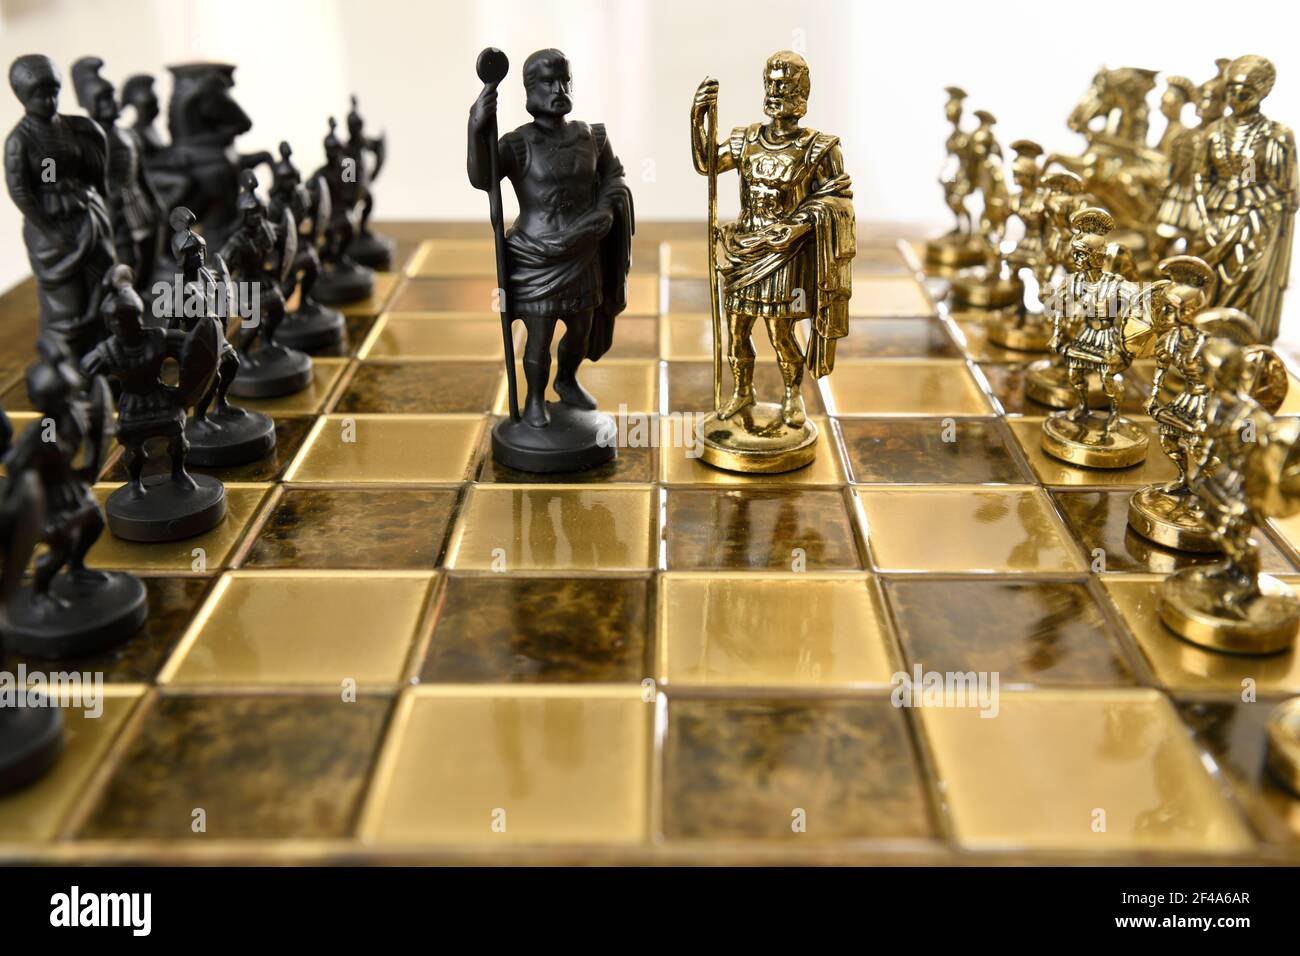 Negro y oro metal emperador romano Rey figurillas de ajedrez de ejércitos opuestos en tablero de ajedrez listos para la batalla Foto de stock